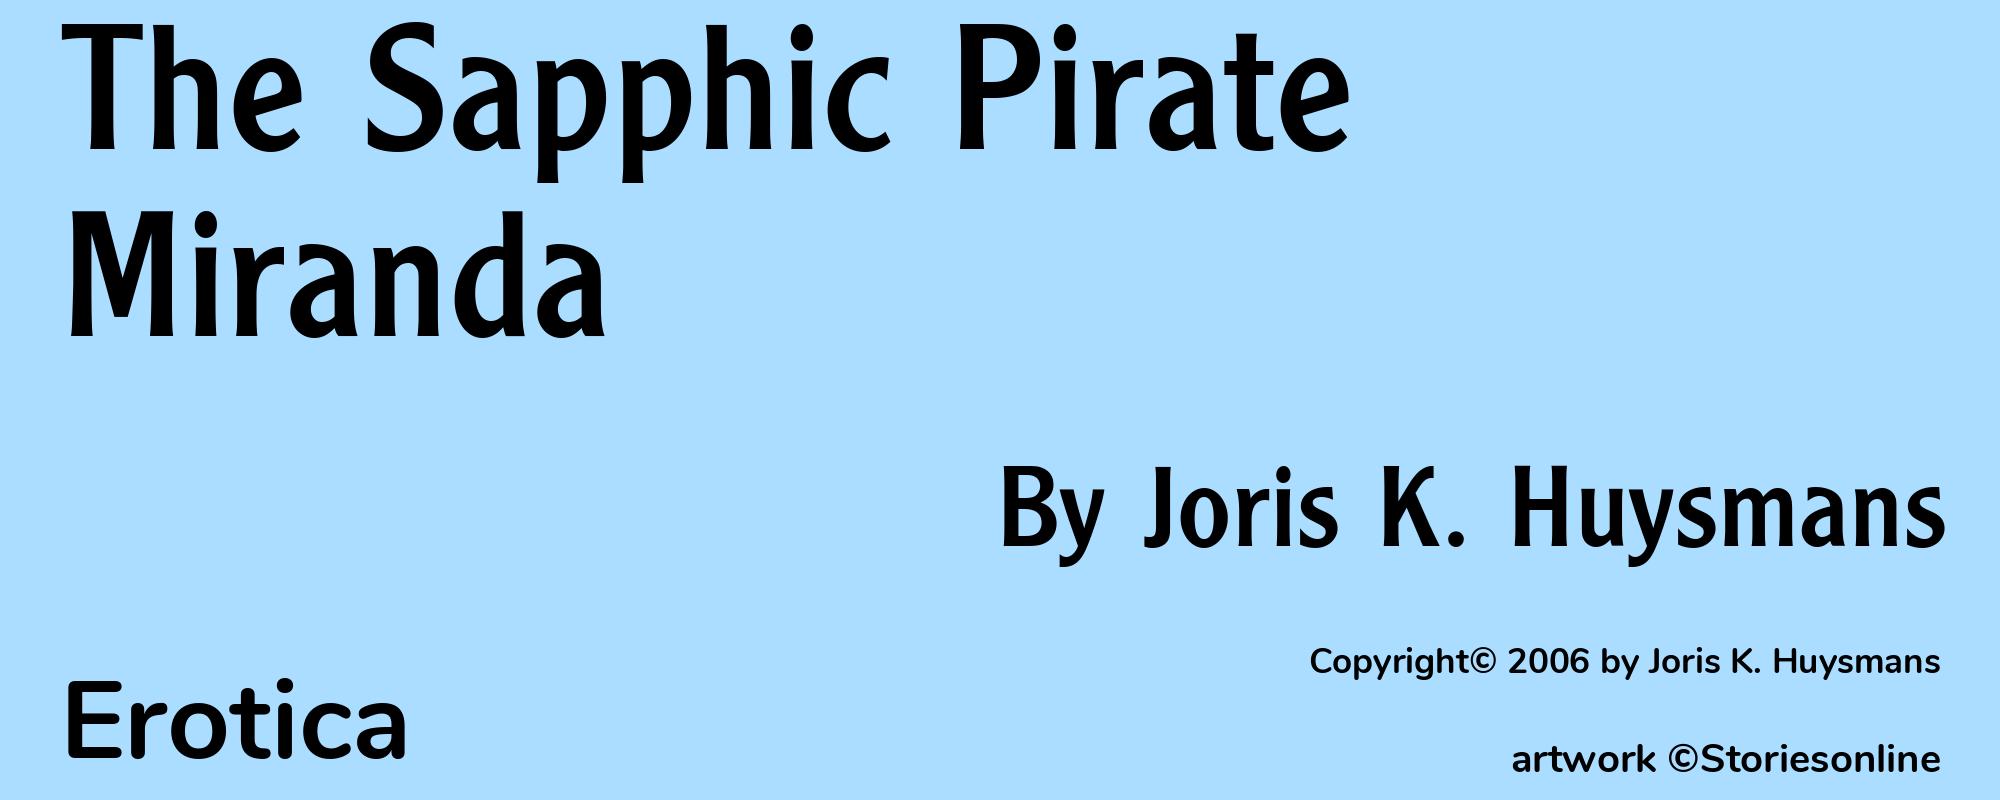 The Sapphic Pirate Miranda - Cover